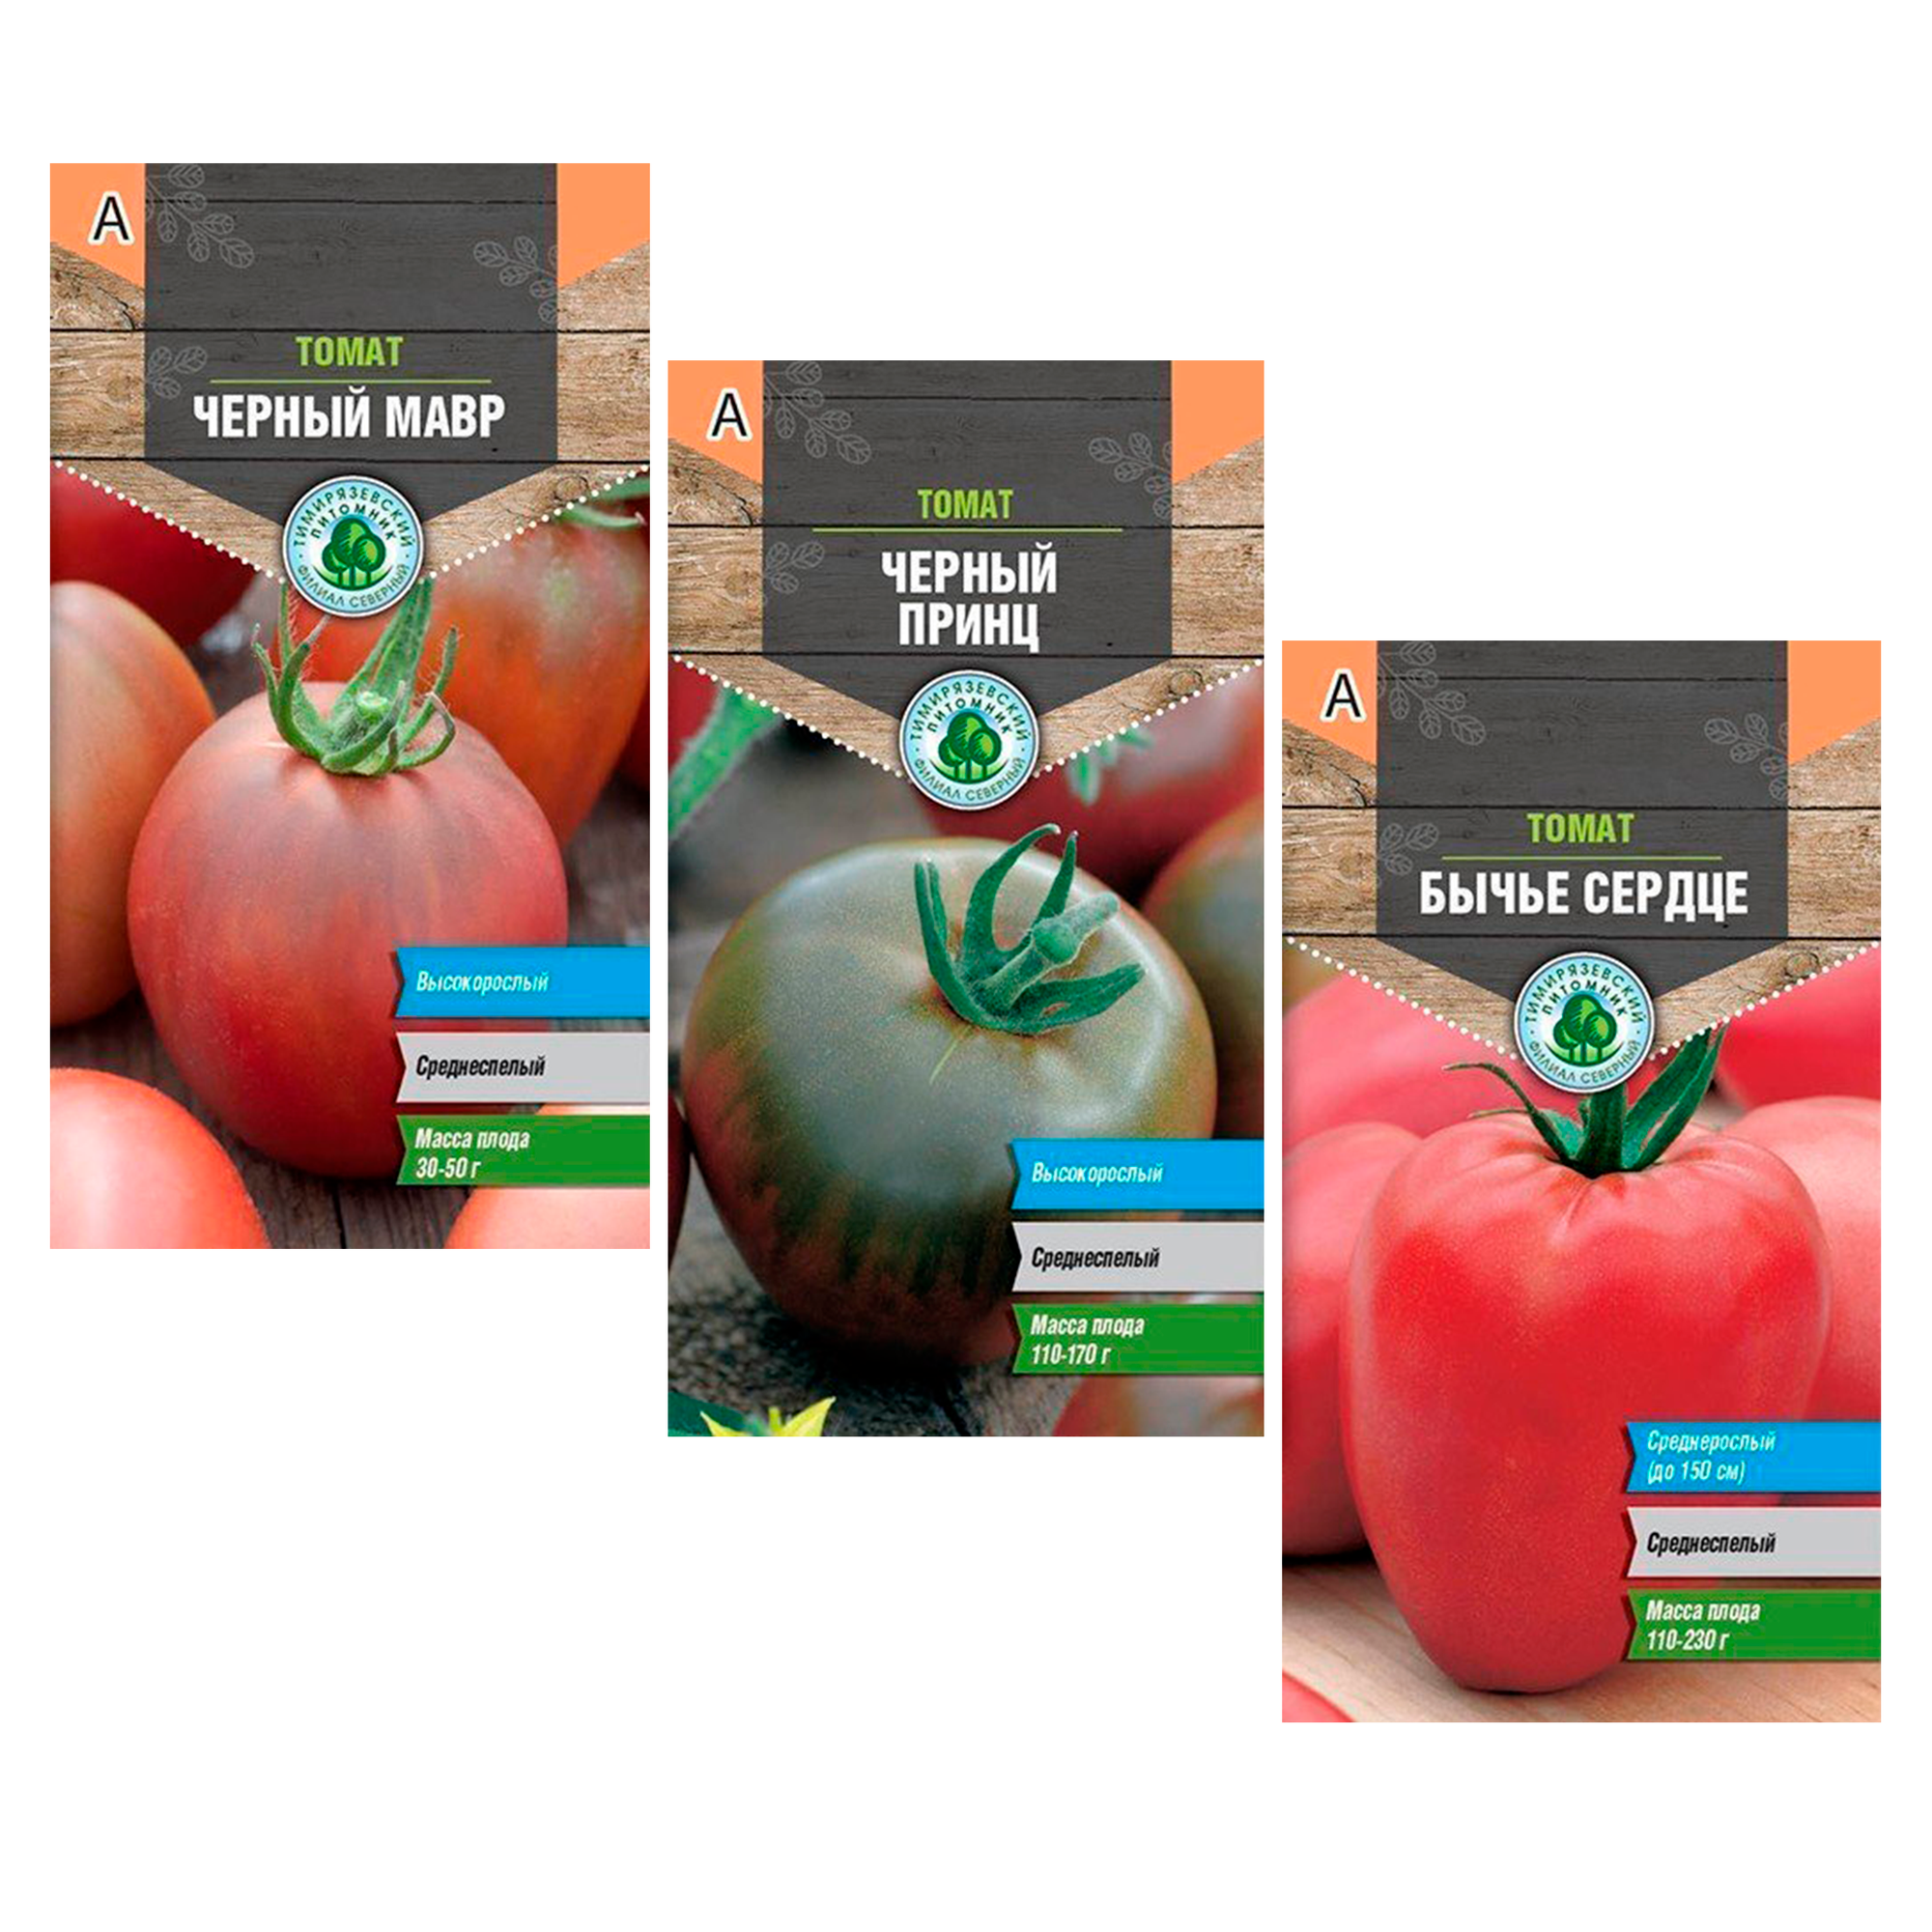 Набор семян томатов от Тимирязевского питомника: Черный принц; Черный мавр; Бычье сердце